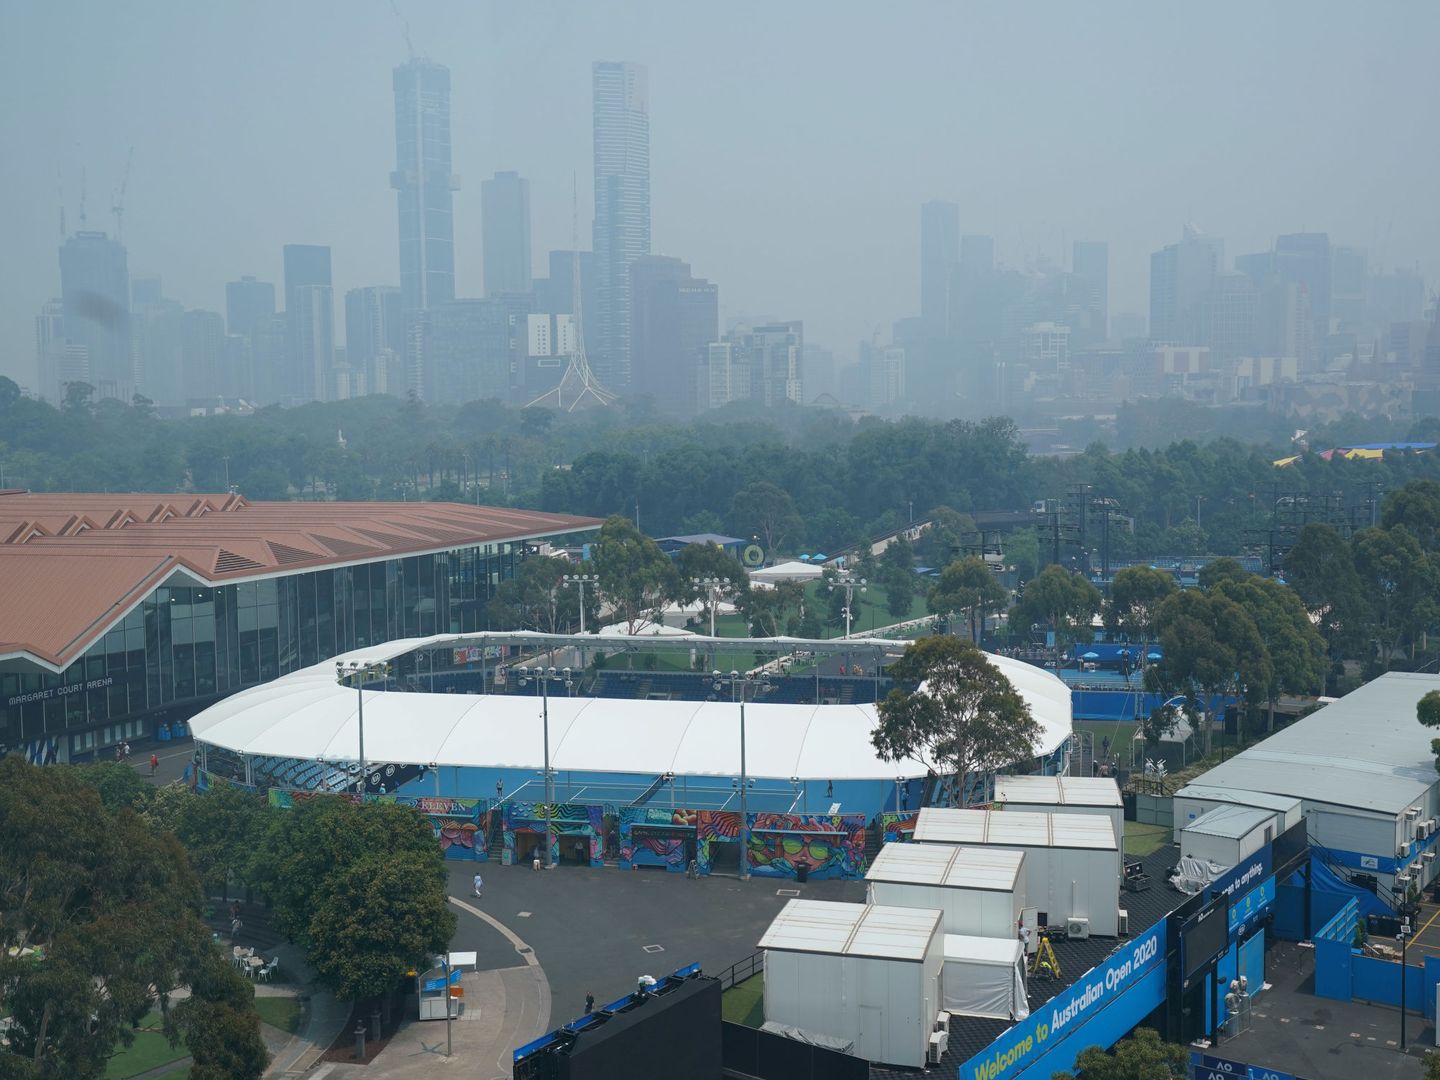 Vista general del Melbourne Park, envuelto por partículas contaminantes en el aire. (EFE)